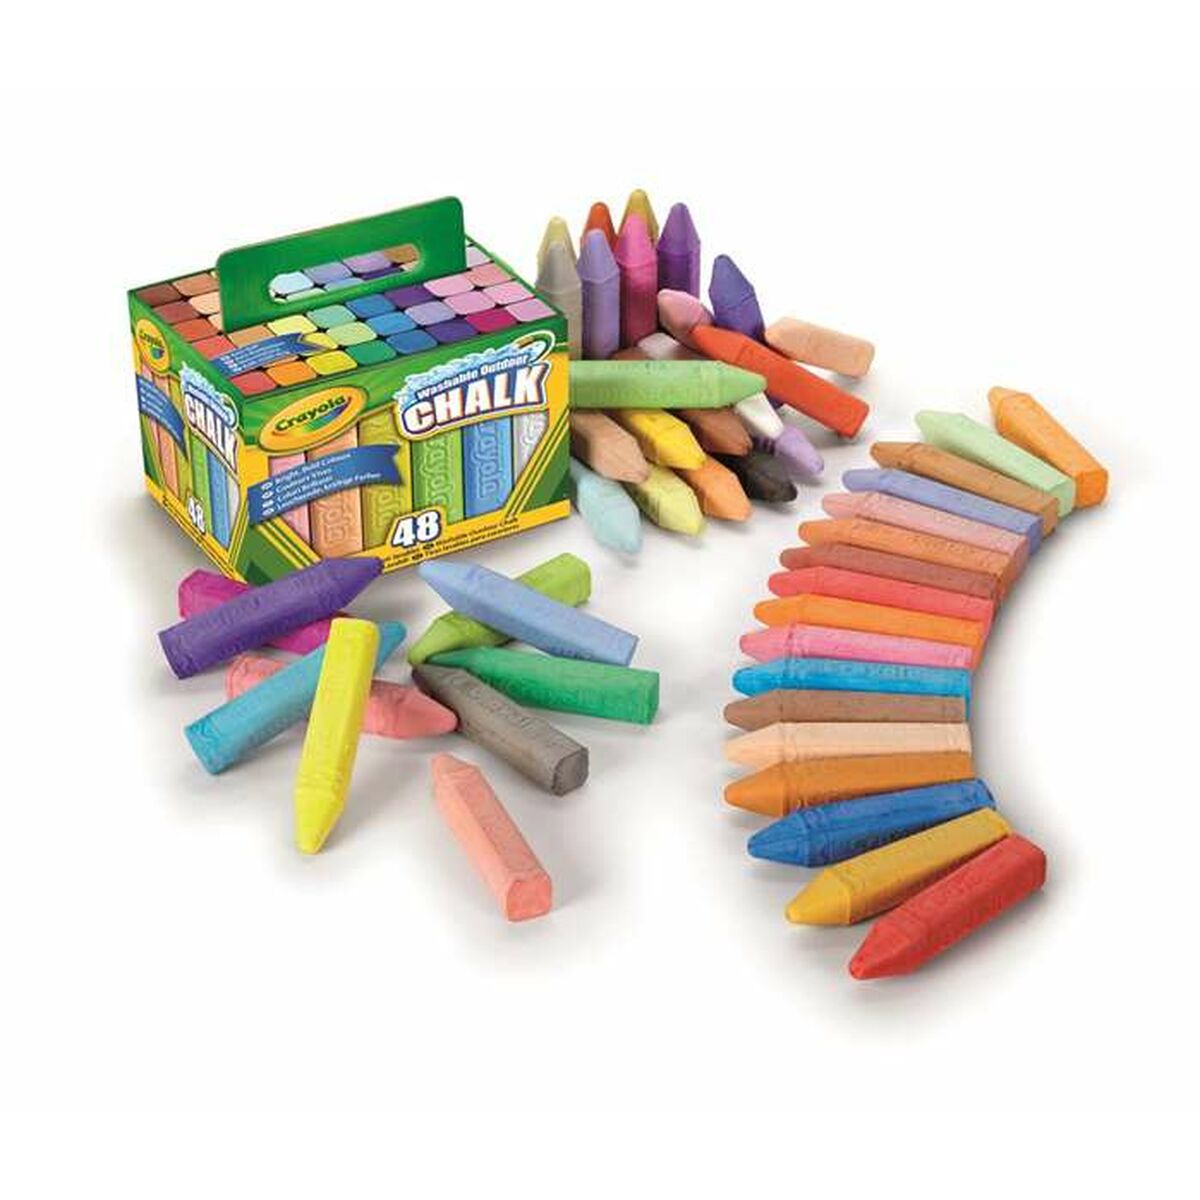 Craies de sol Crayola Maxi Multicouleur Lavable 48 Pièces 17 x 13 x 12 cm